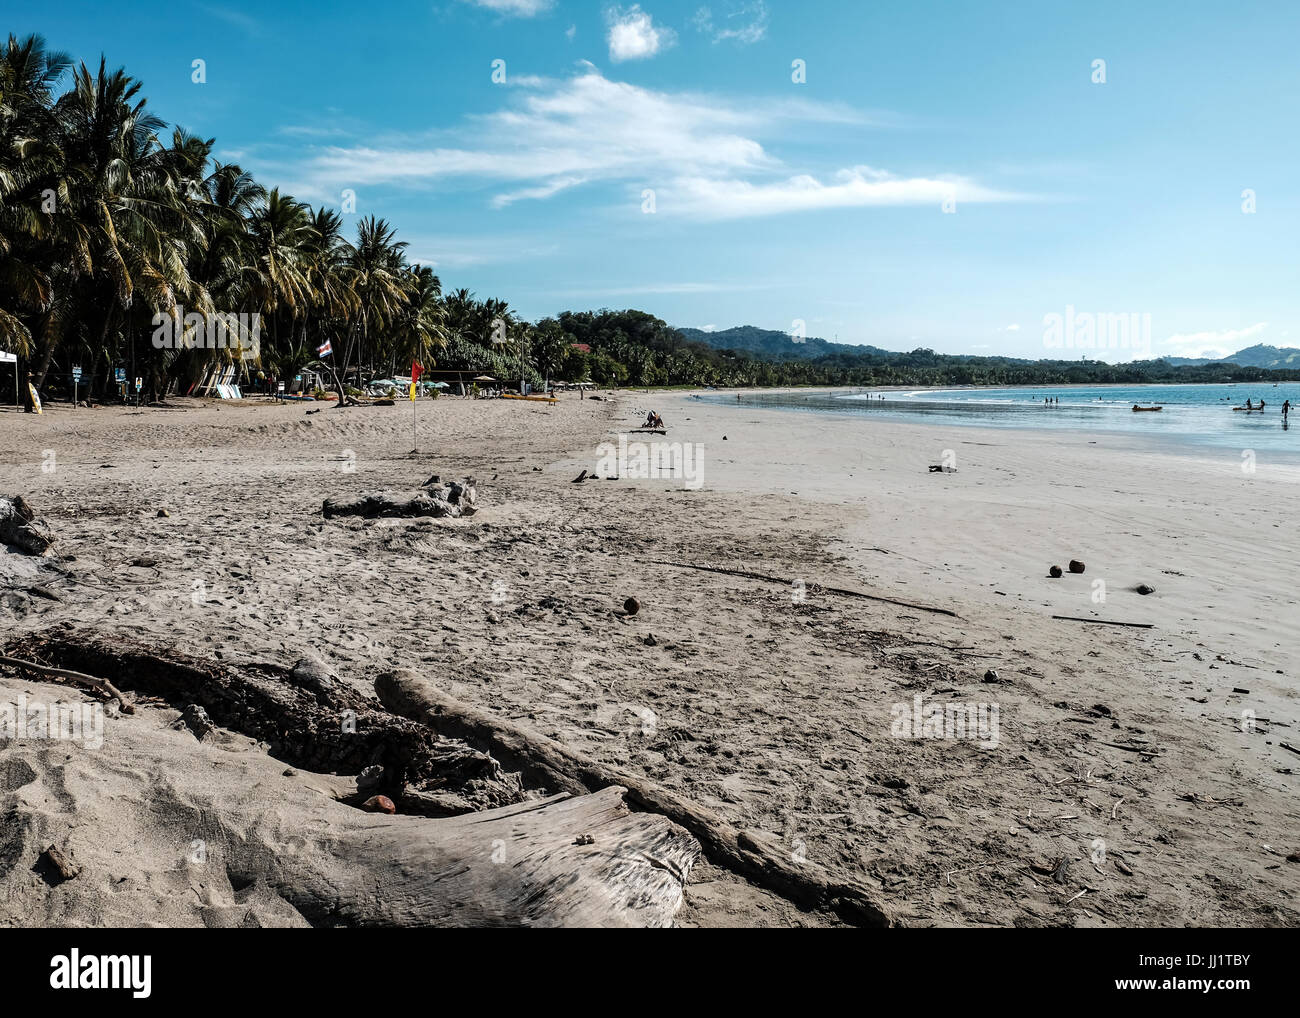 Costa Rica Strand touristische Reiseziele in Tavel atemberaubende Strände spanische Kultur Tico Palmen Kokosnüsse Mittelamerika Pazifik Stockfoto